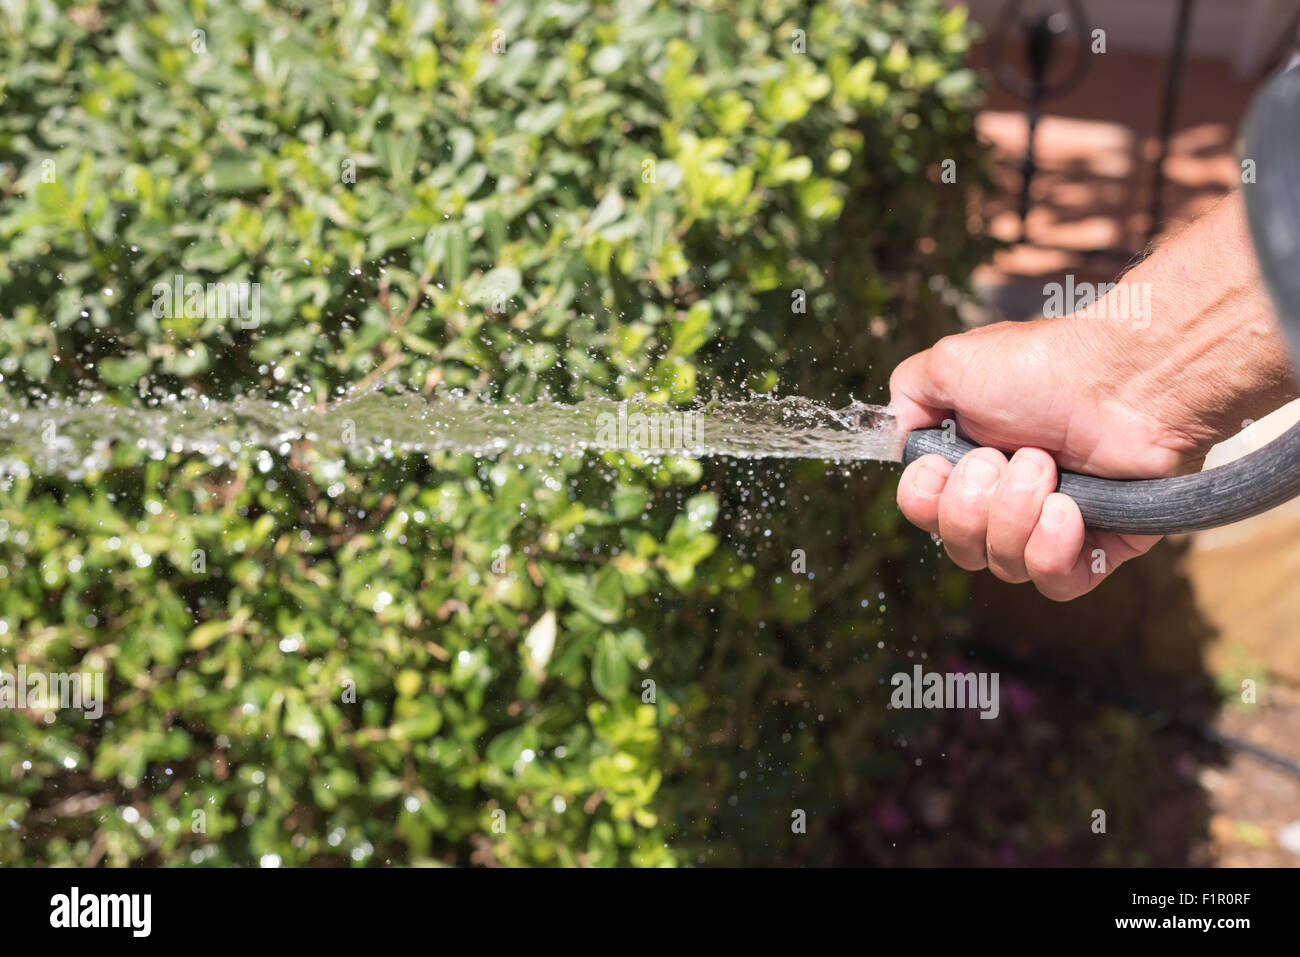 A gardener is watering plants in the garden Stock Photo